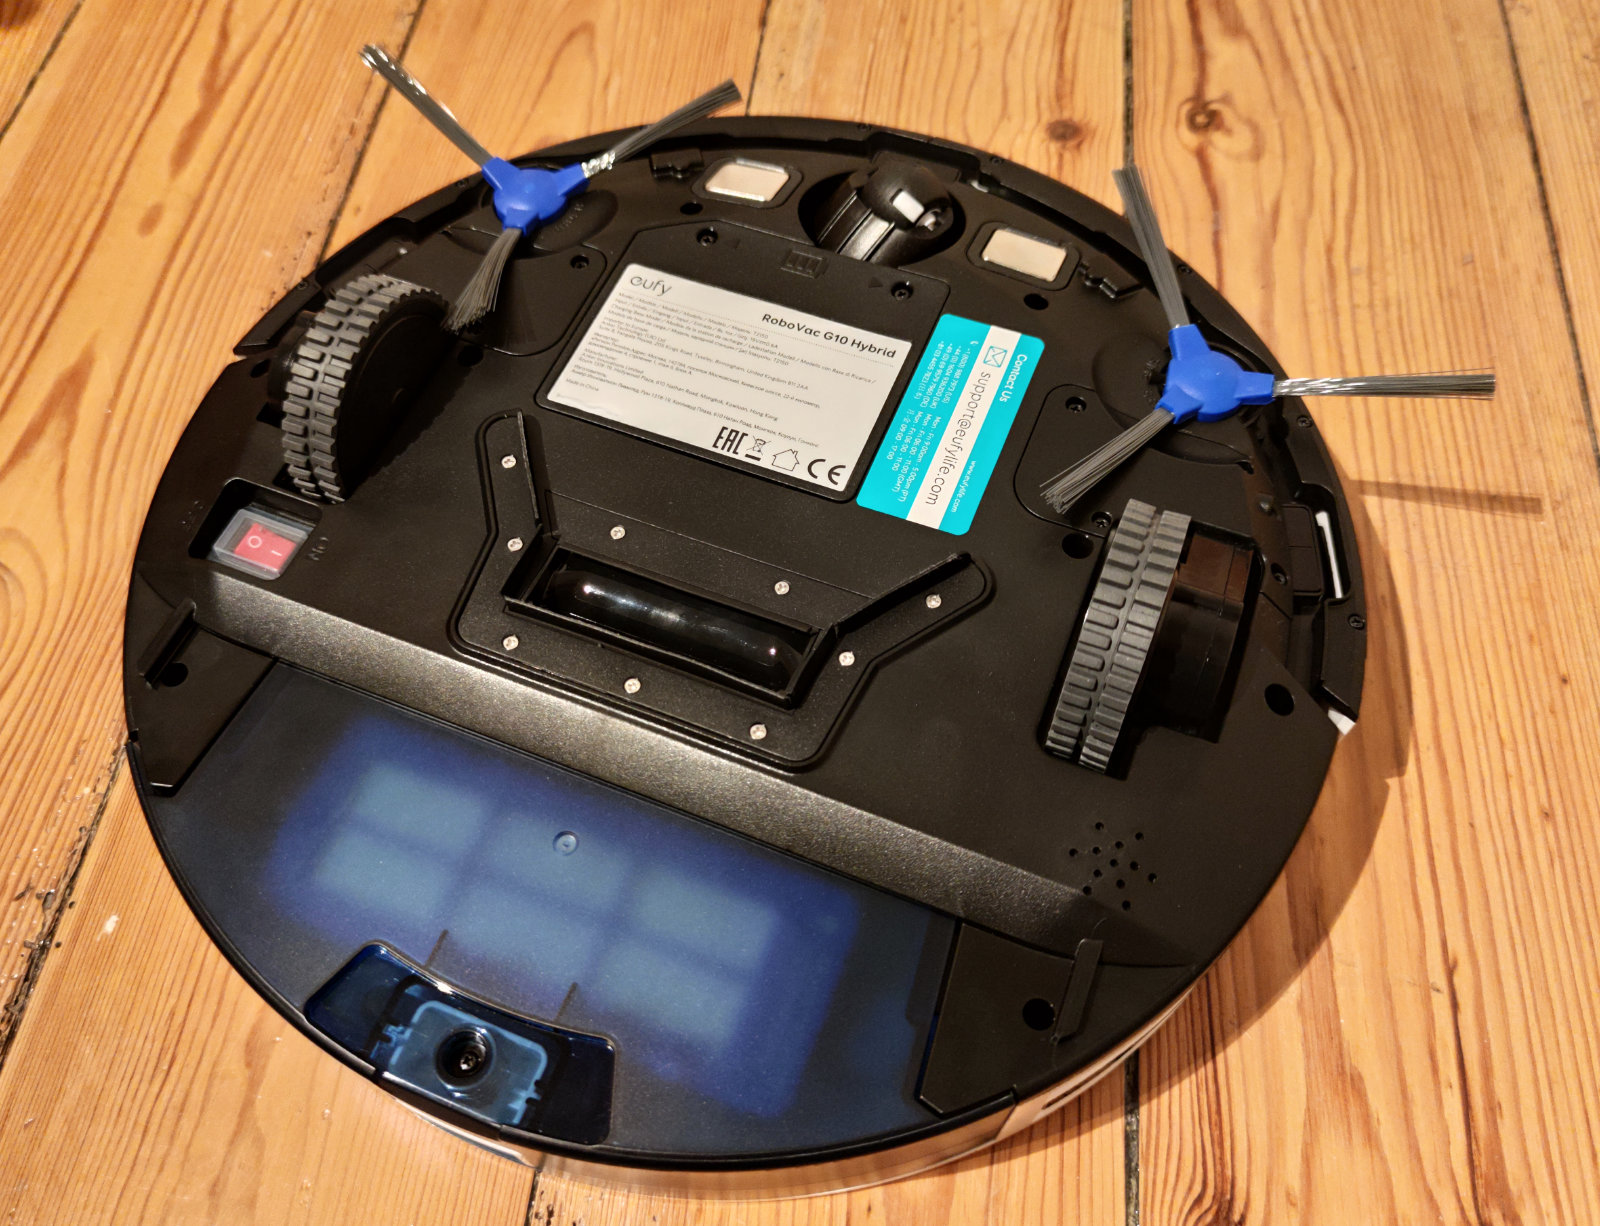 Eufy RoboVac G10 Hybrid im Test: Neuer Saugroboter mit Wisch-Funktion –  Seite 3 – Hartware